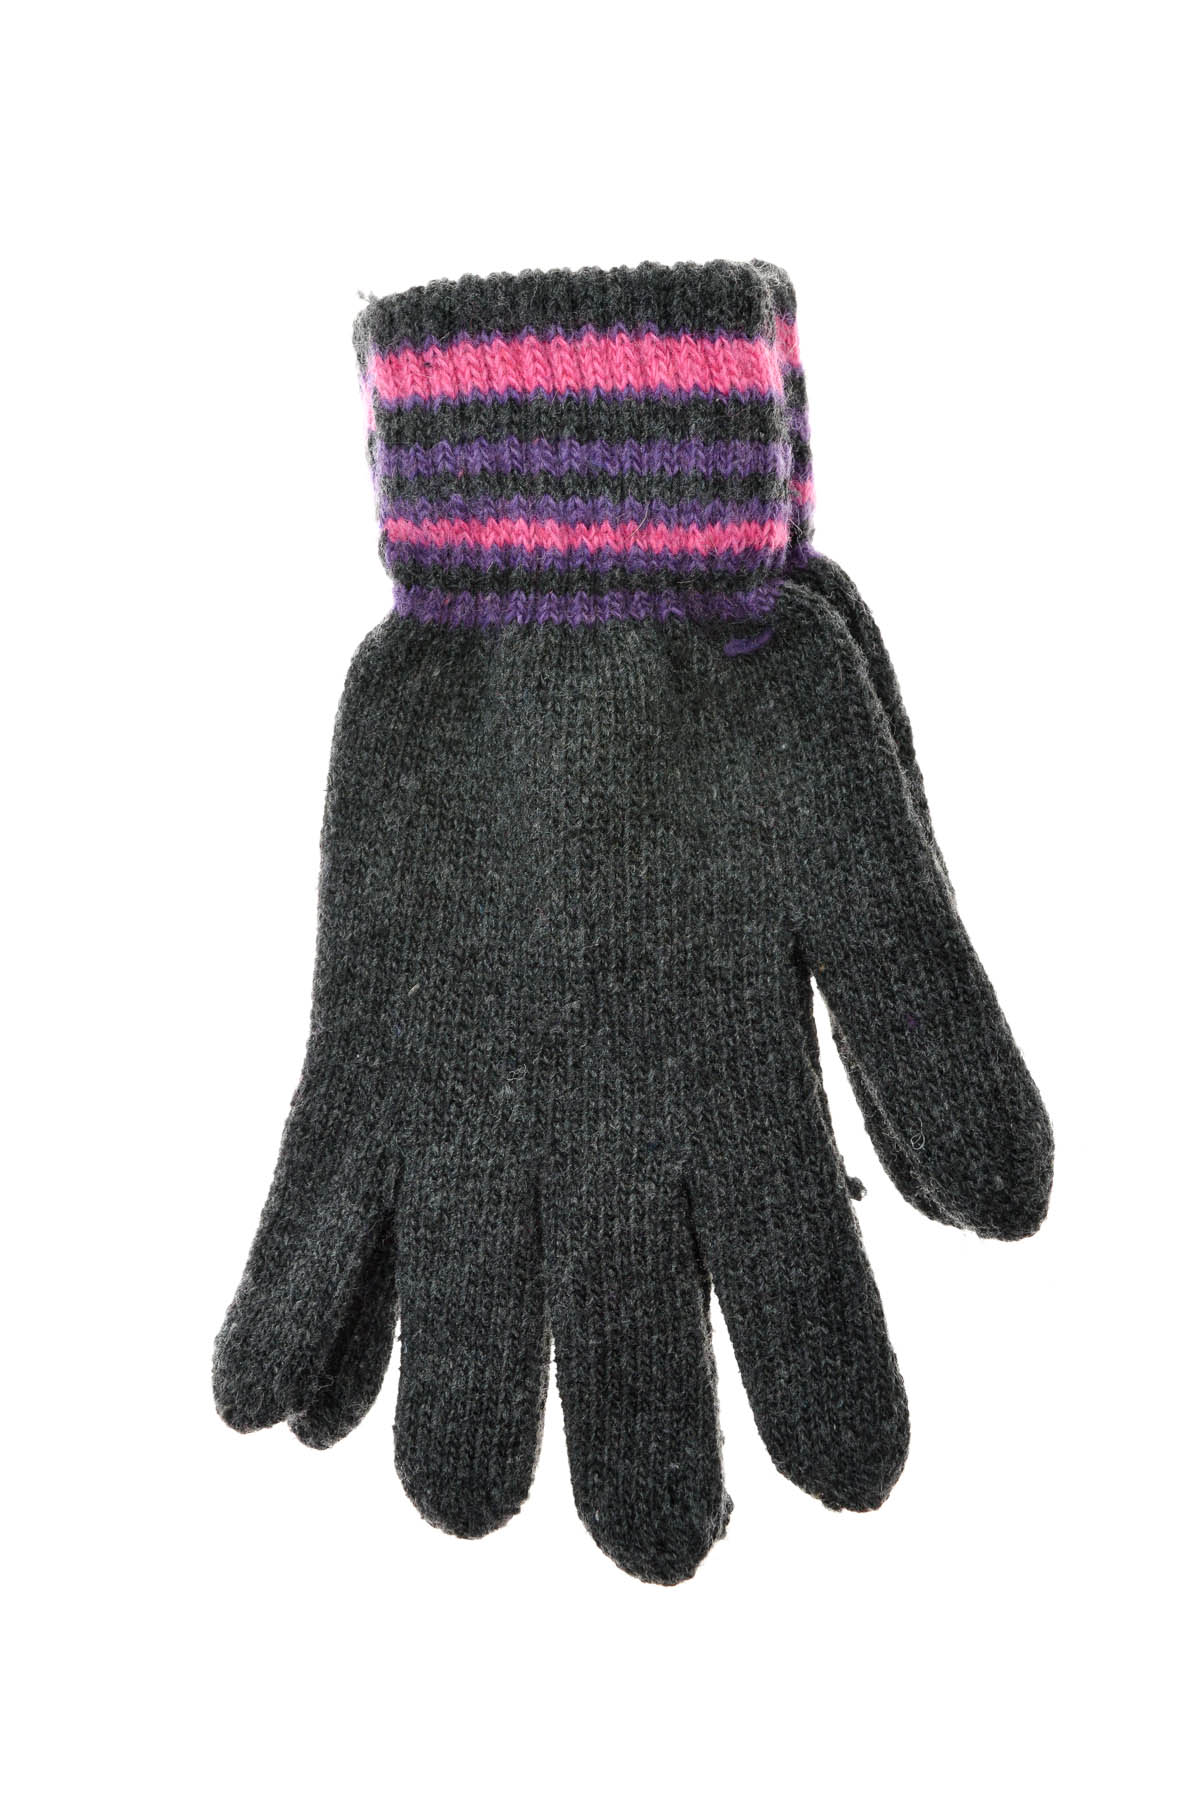 Kids' Gloves -Yo! CLub - 6